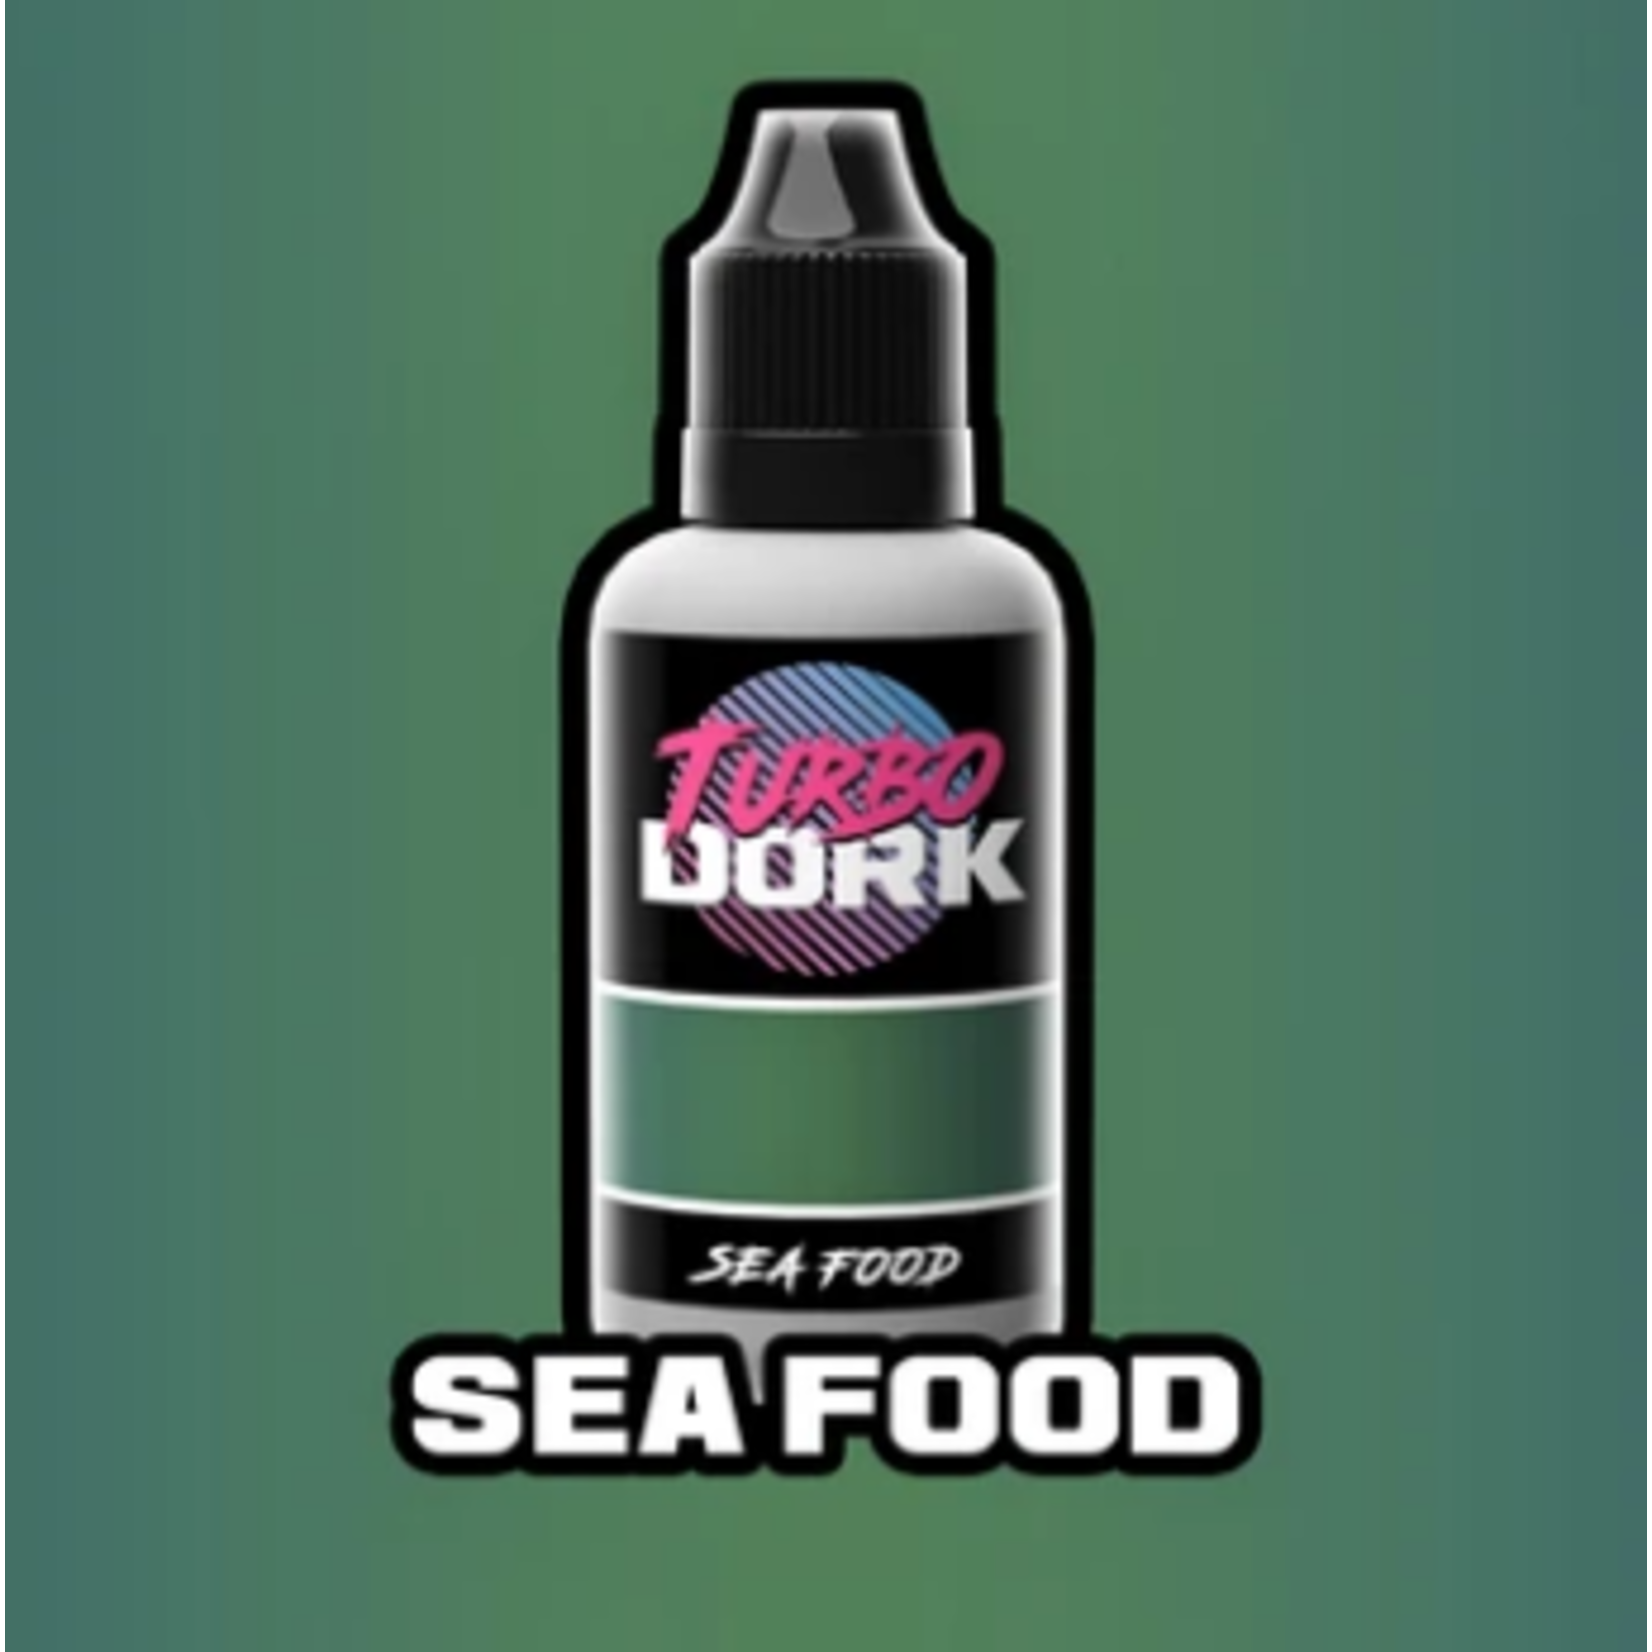 Turbo Dork: Sea Food 20ml